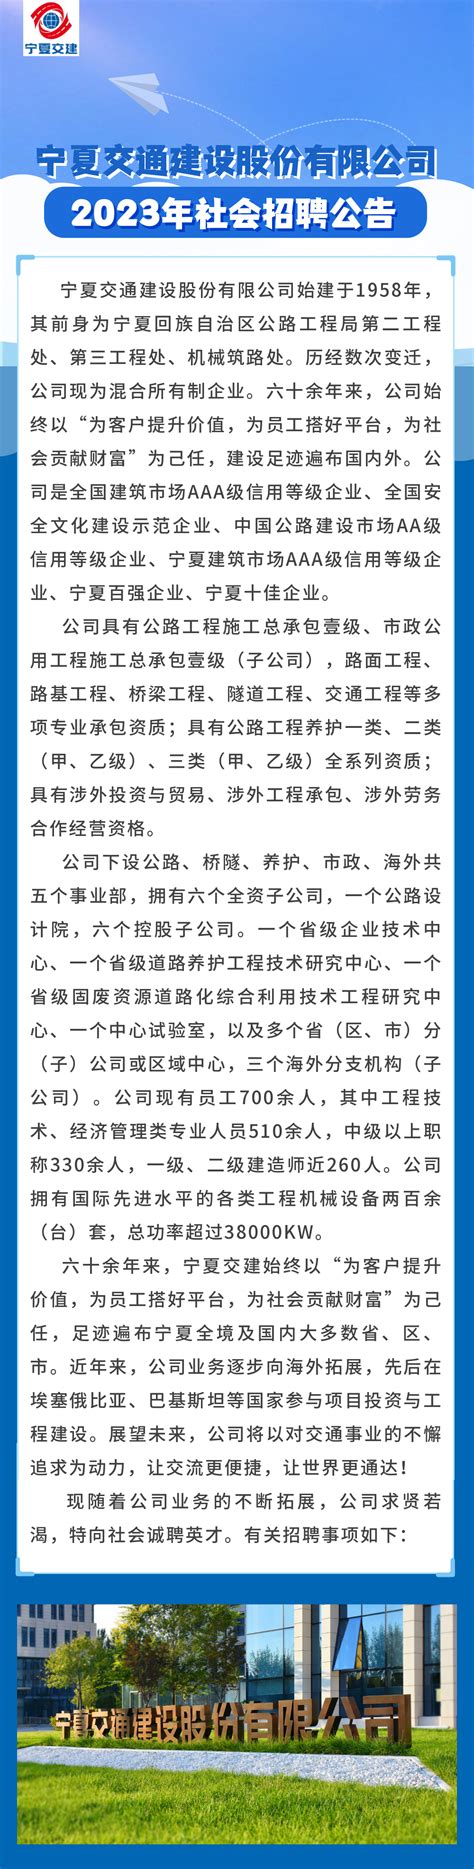 宁夏交通建设股份有限公司2023年社会招聘公告_通知公示_公考雷达